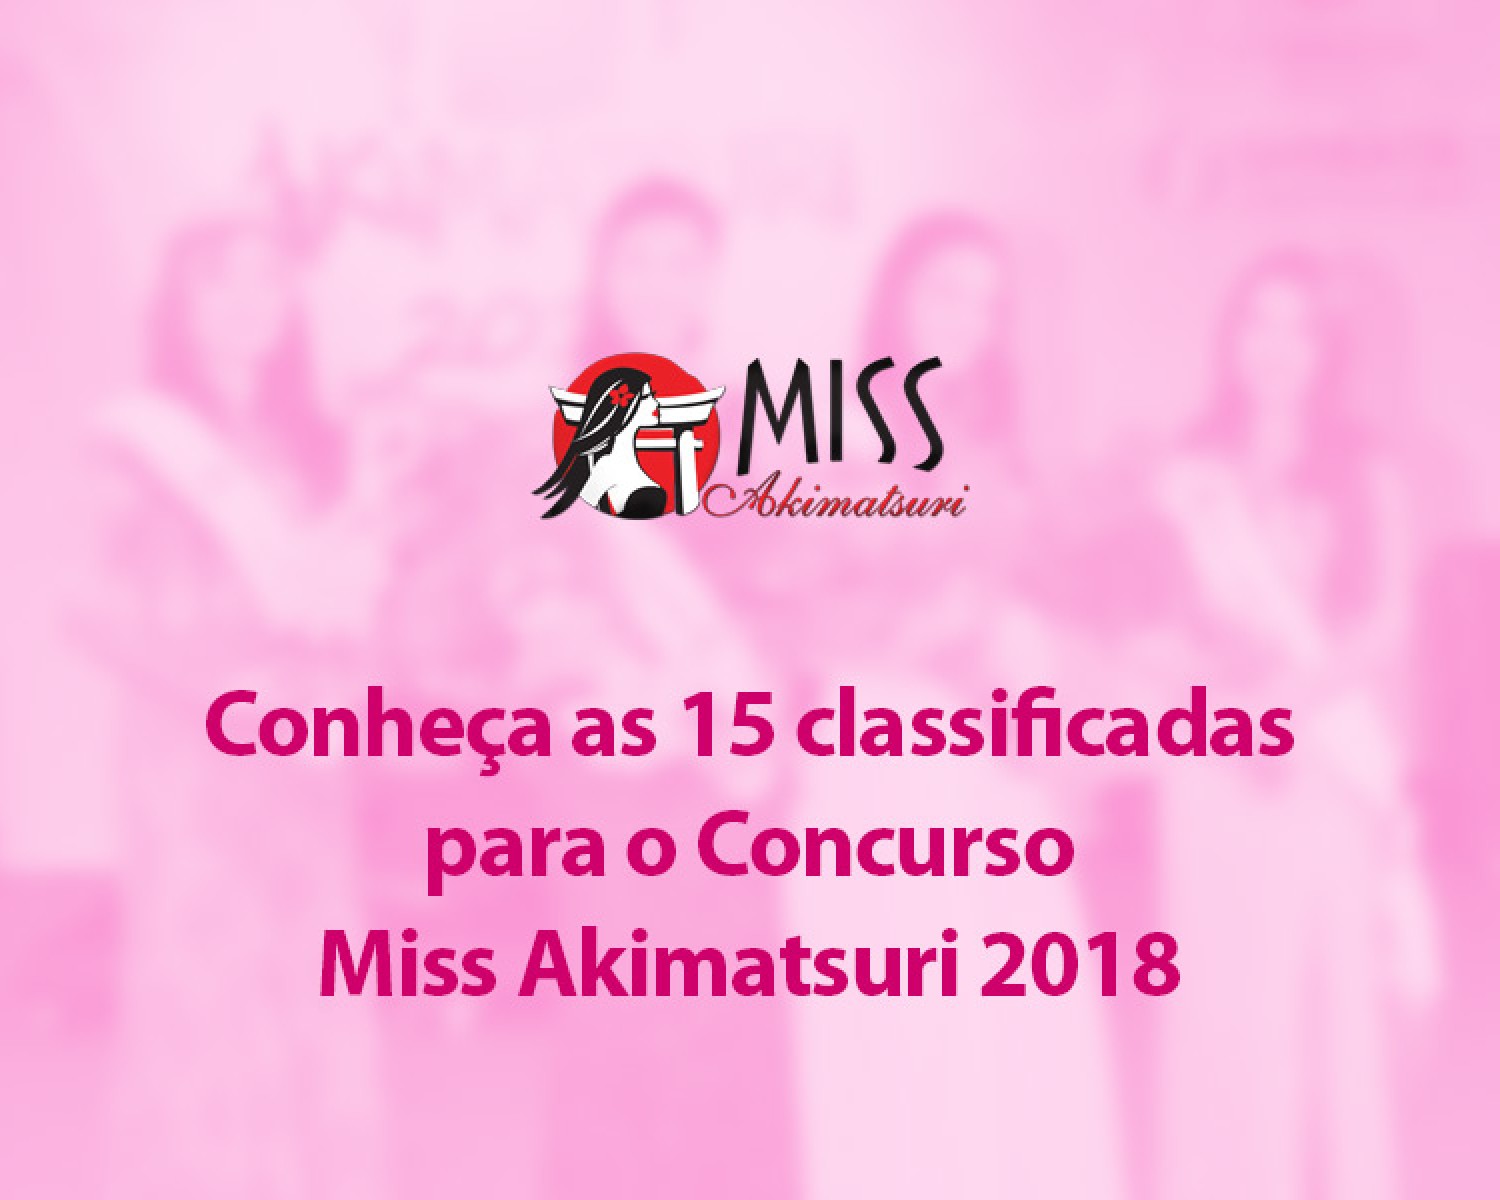 Img: Conheça as 15 classificadas para o Concurso Miss Akimatsuri 2018